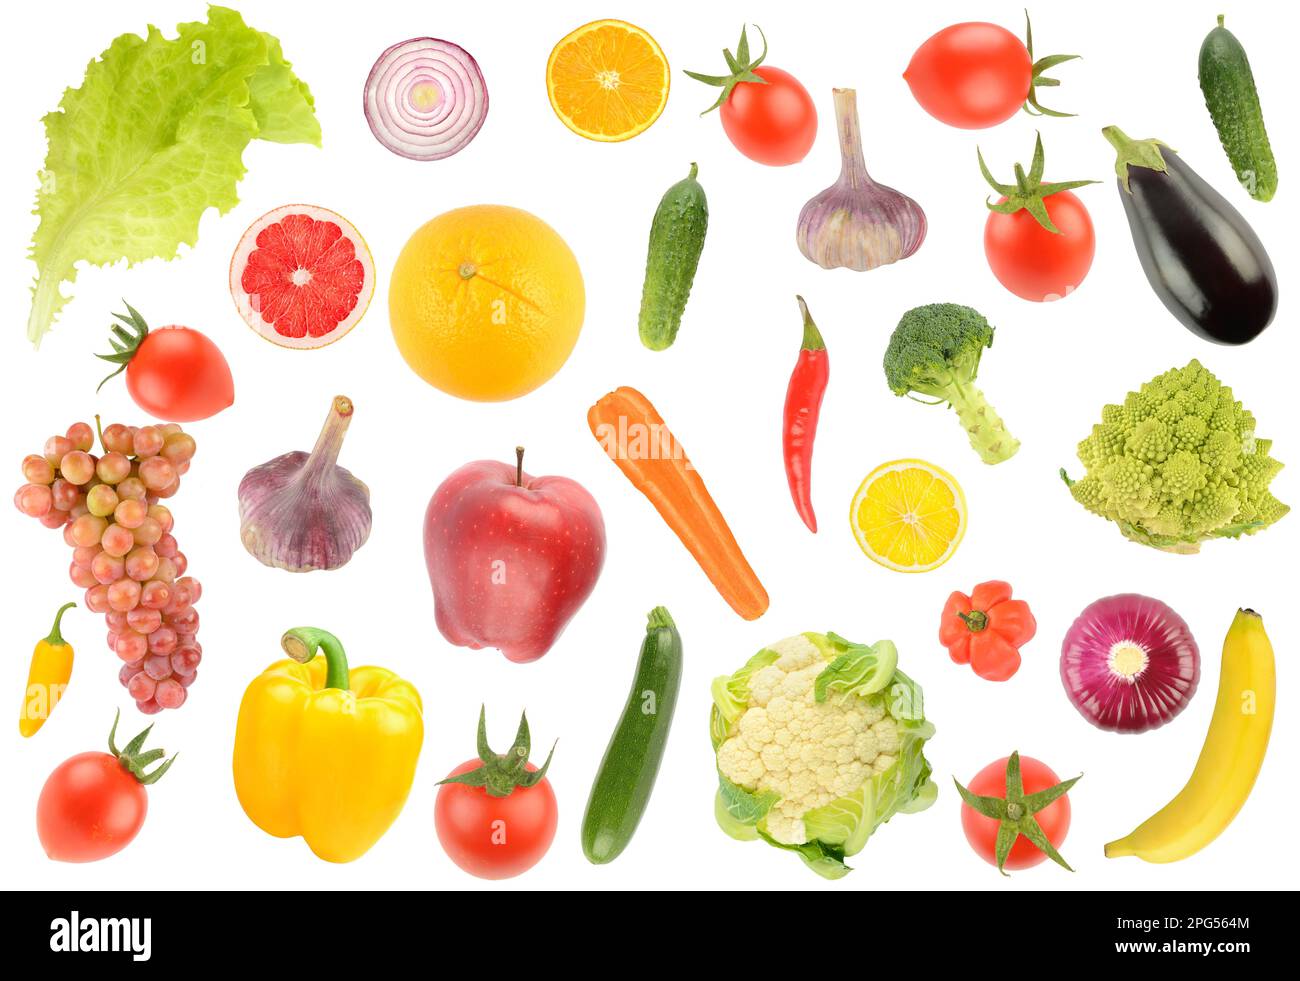 Grand motif de fruits et légumes frais isolés sur fond blanc. Banque D'Images